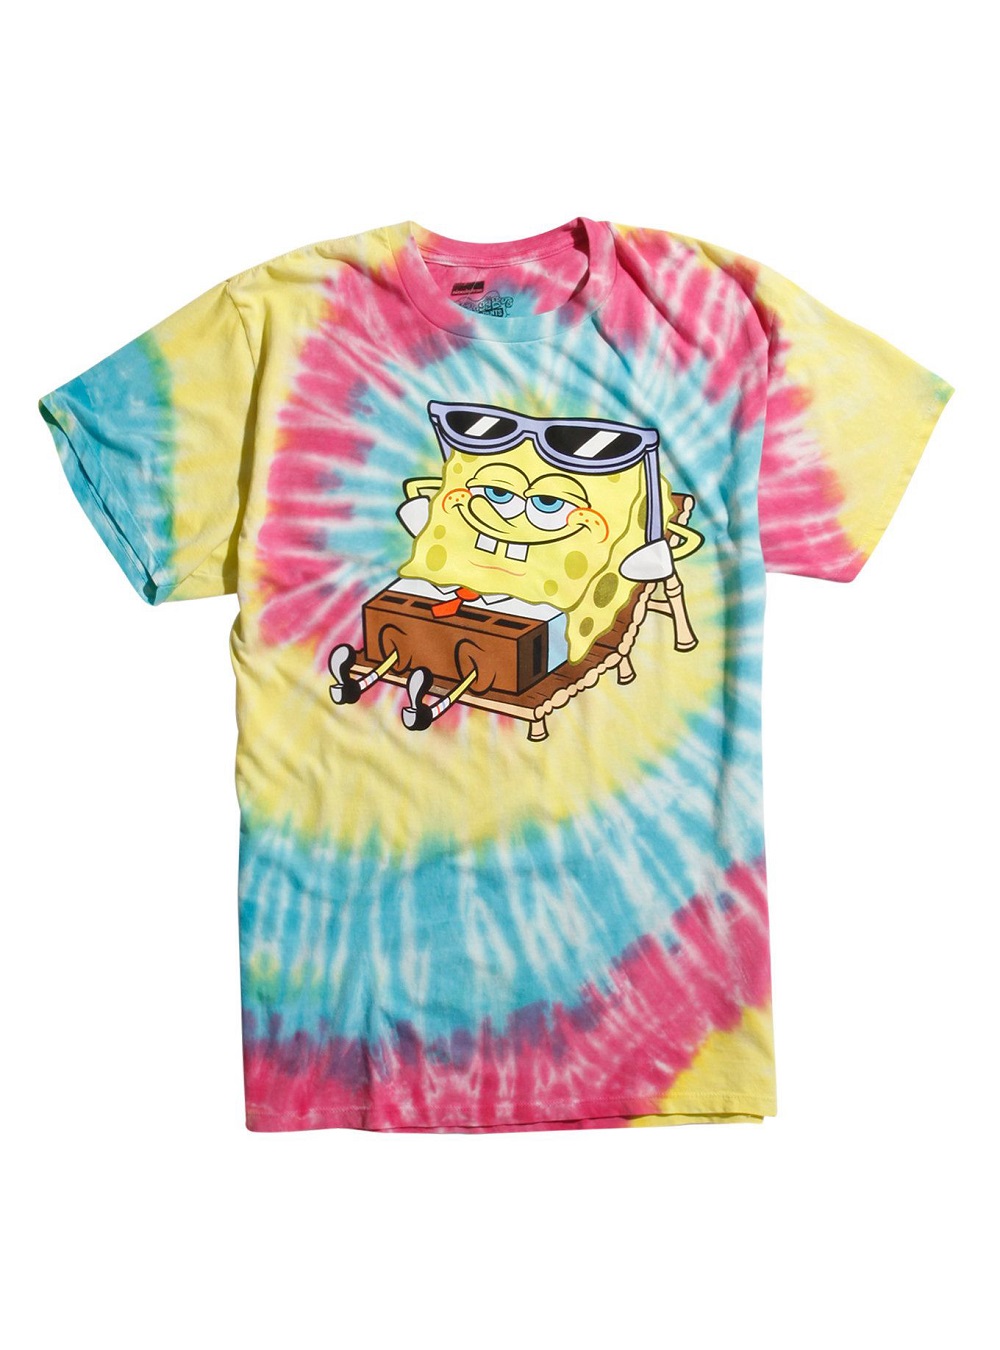 Gangster Spongebob Lie On The Beach 3d Shirt Full Size Up To 5xl